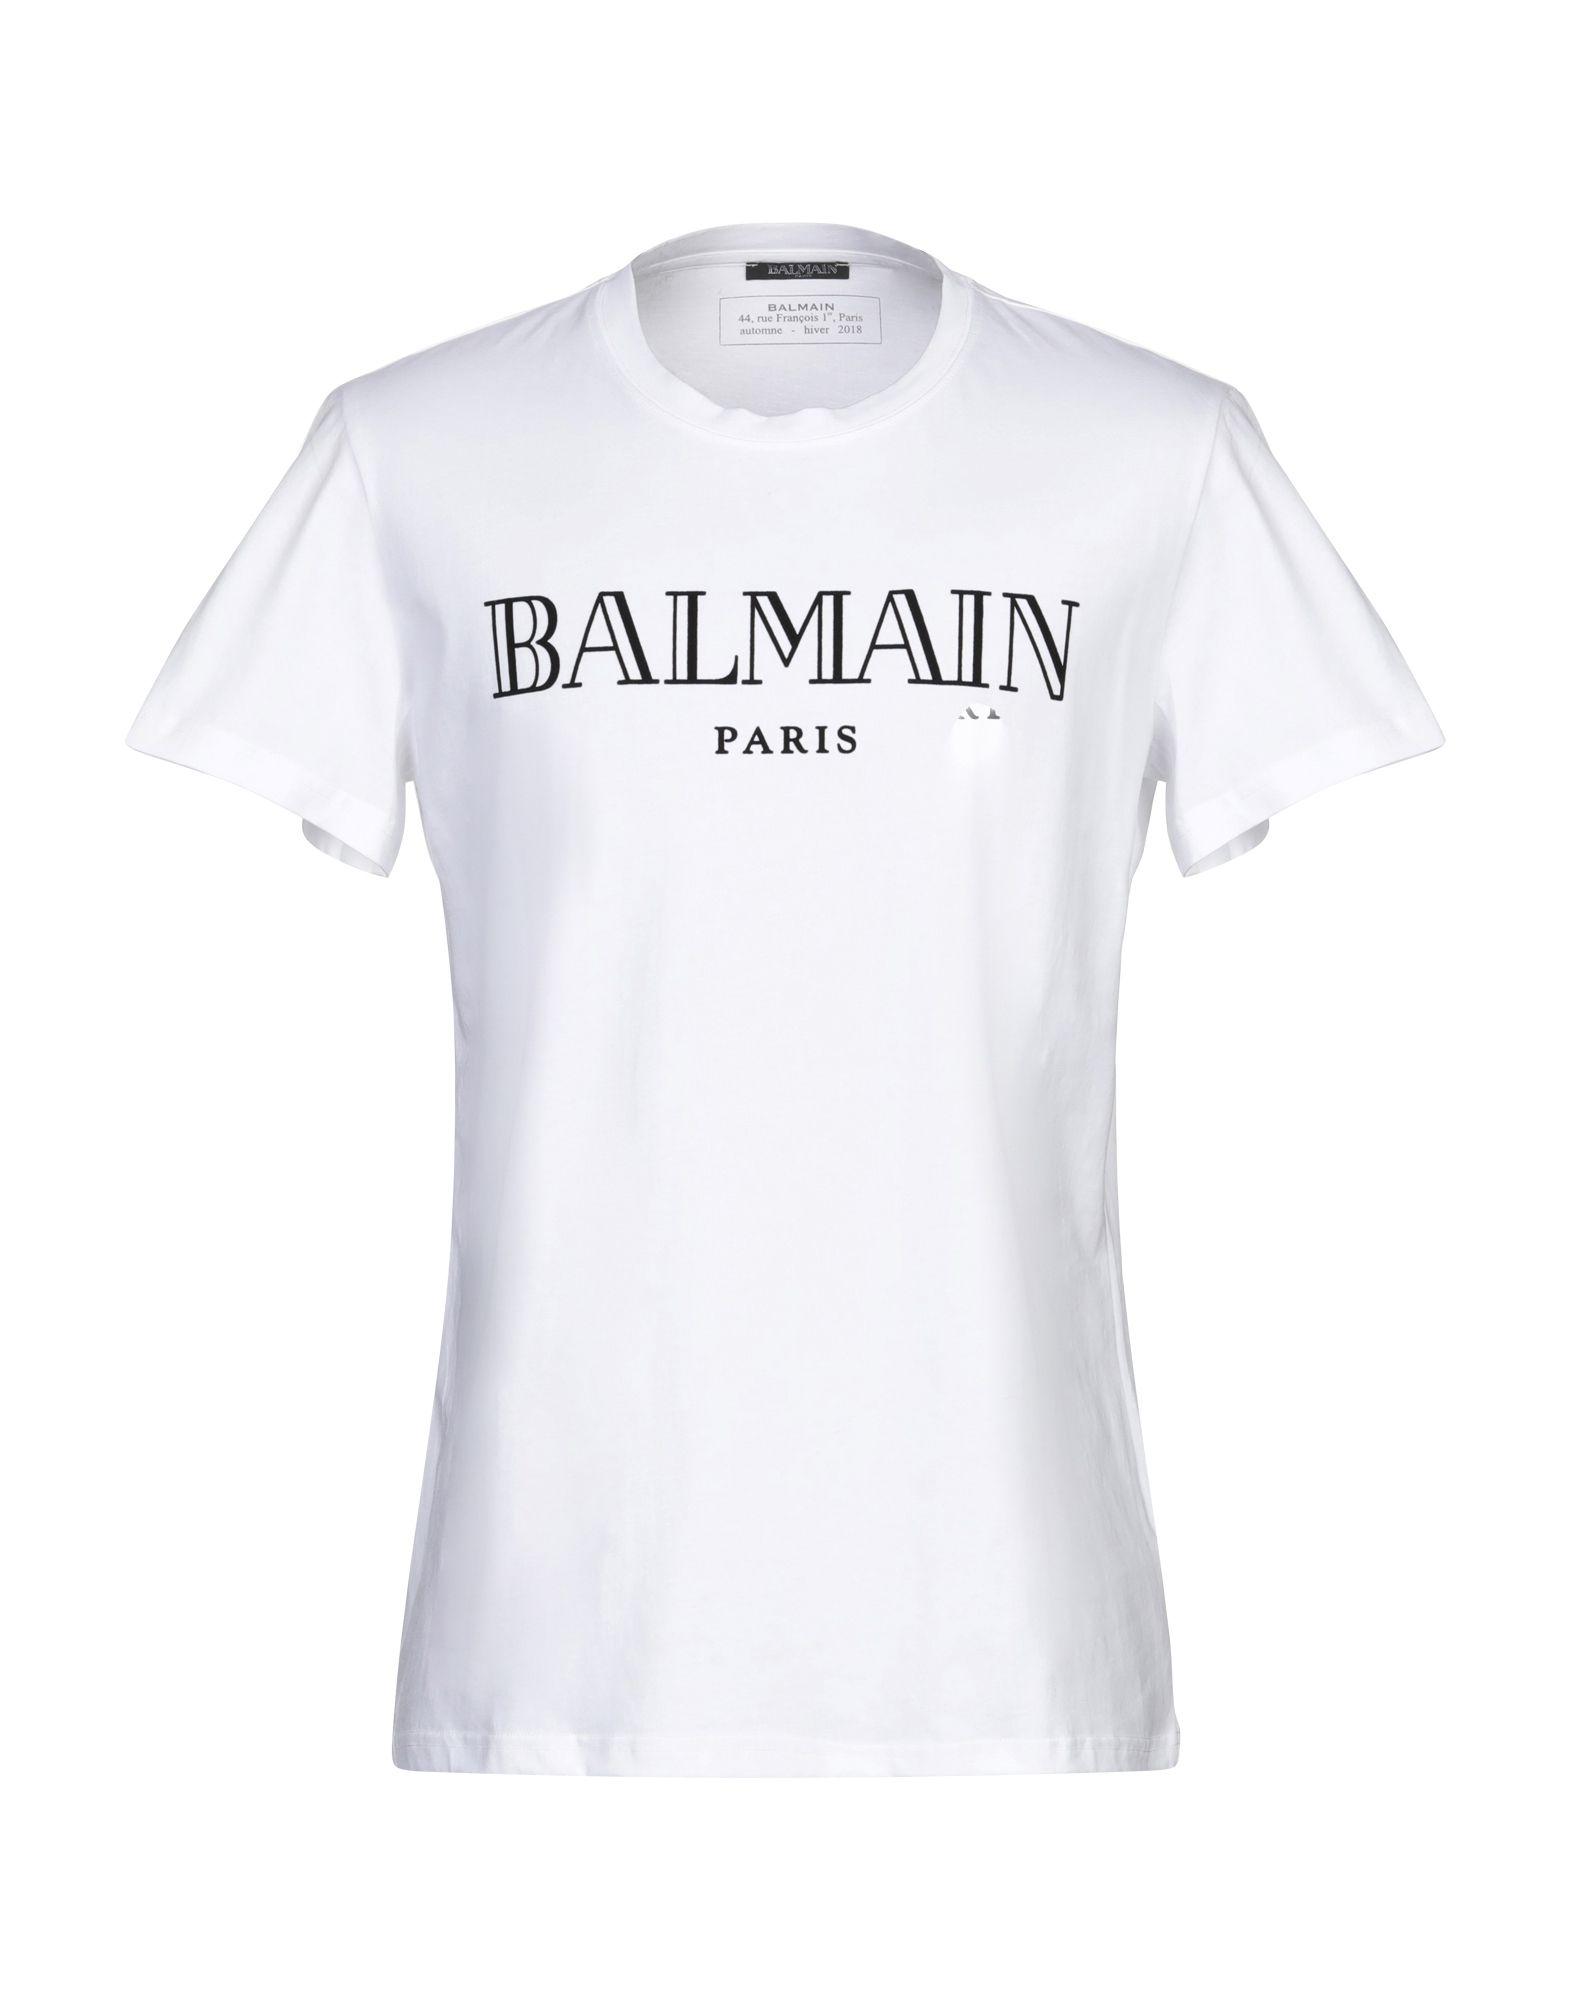 Balmain T-shirt in White for Men - Lyst